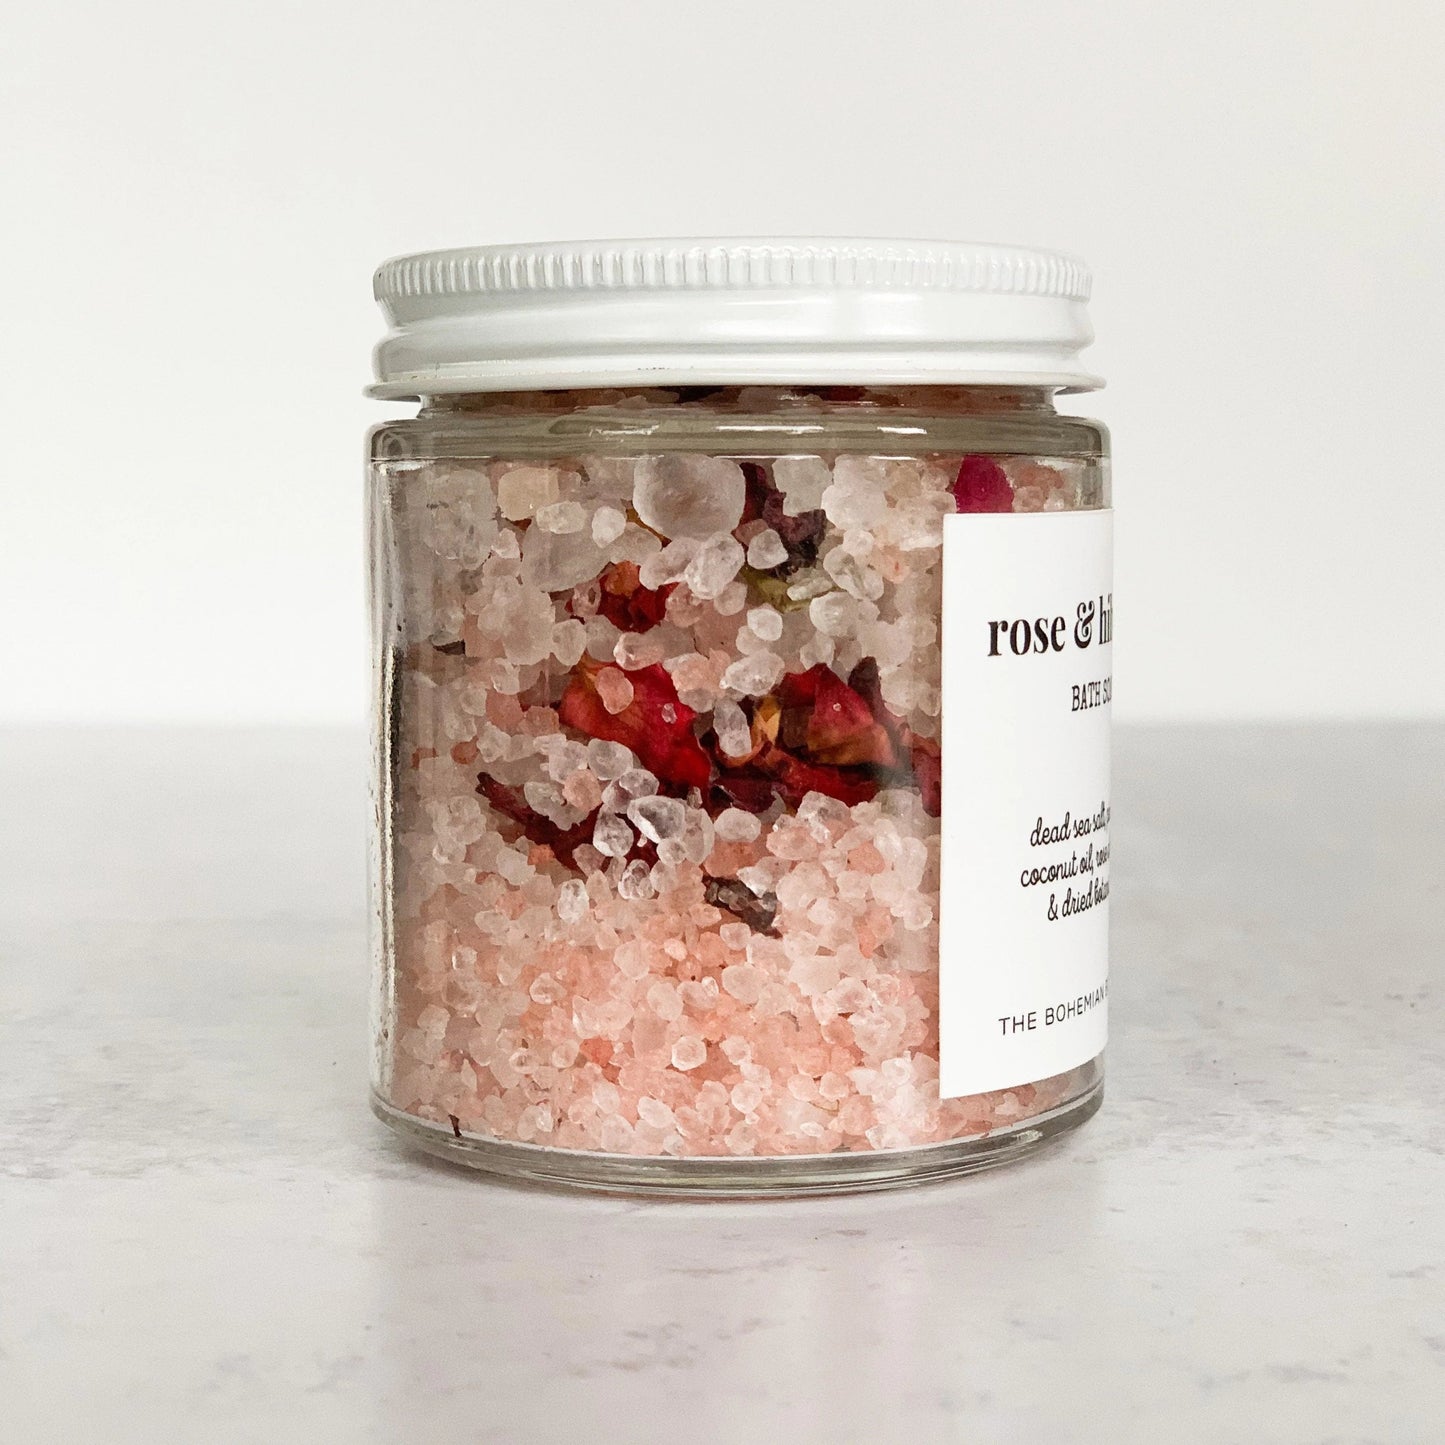 Rose and Hibiscus Bath Soak - Rose and Hibiscus Bath Salts